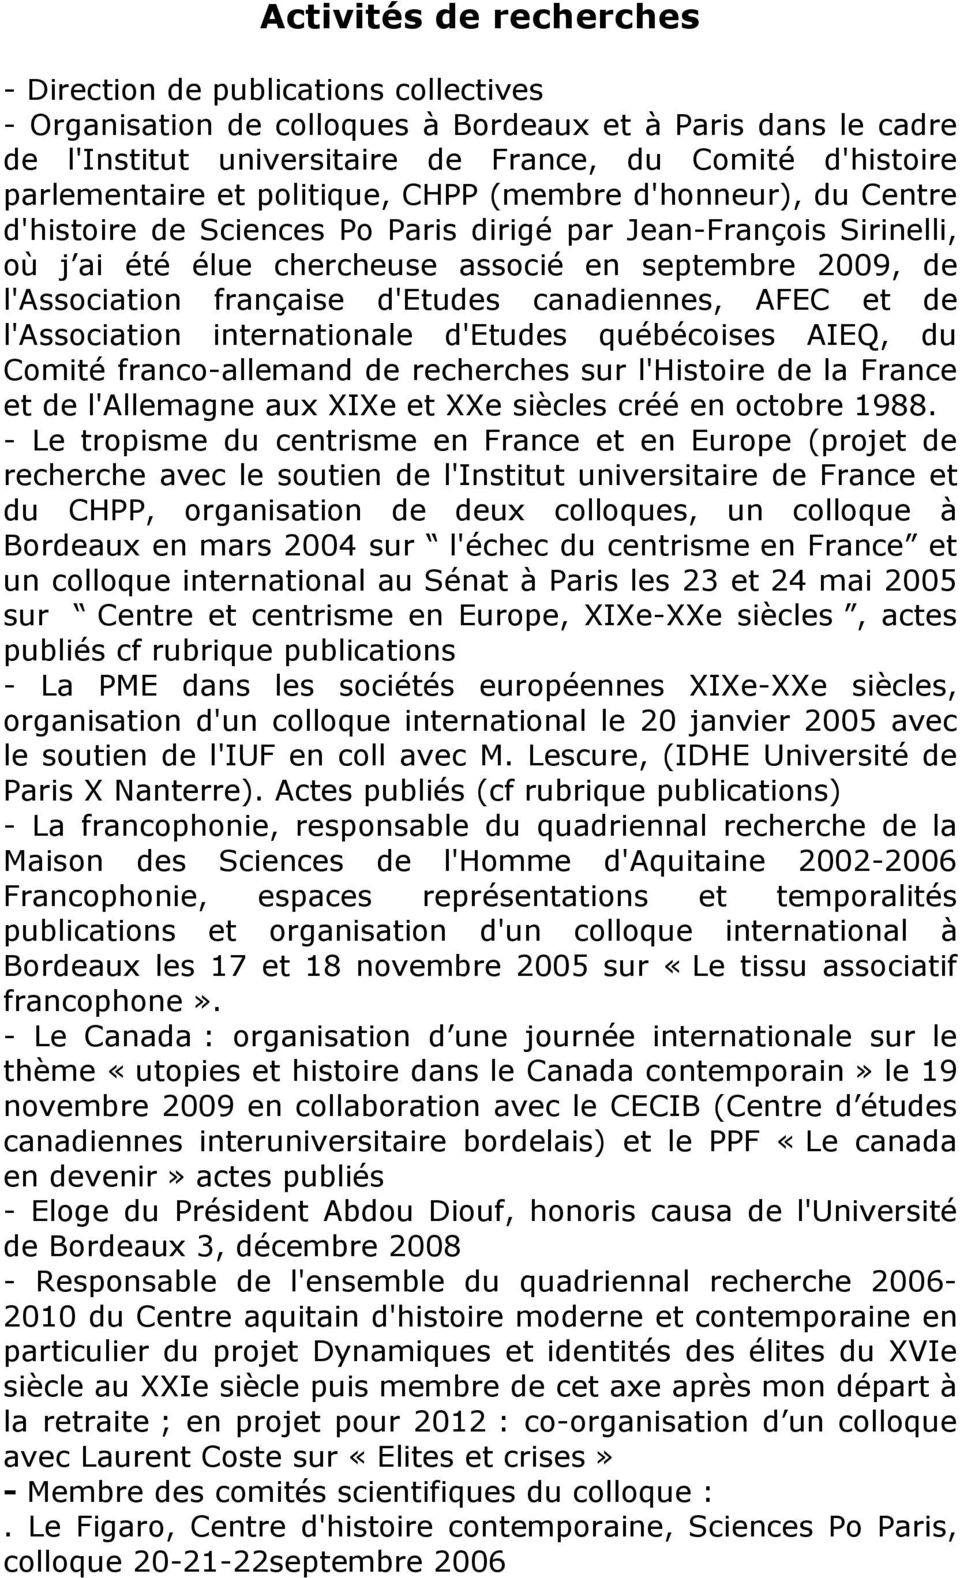 l'association française d'etudes canadiennes, AFEC et de l'association internationale d'etudes québécoises AIEQ, du Comité franco-allemand de recherches sur l'histoire de la France et de l'allemagne